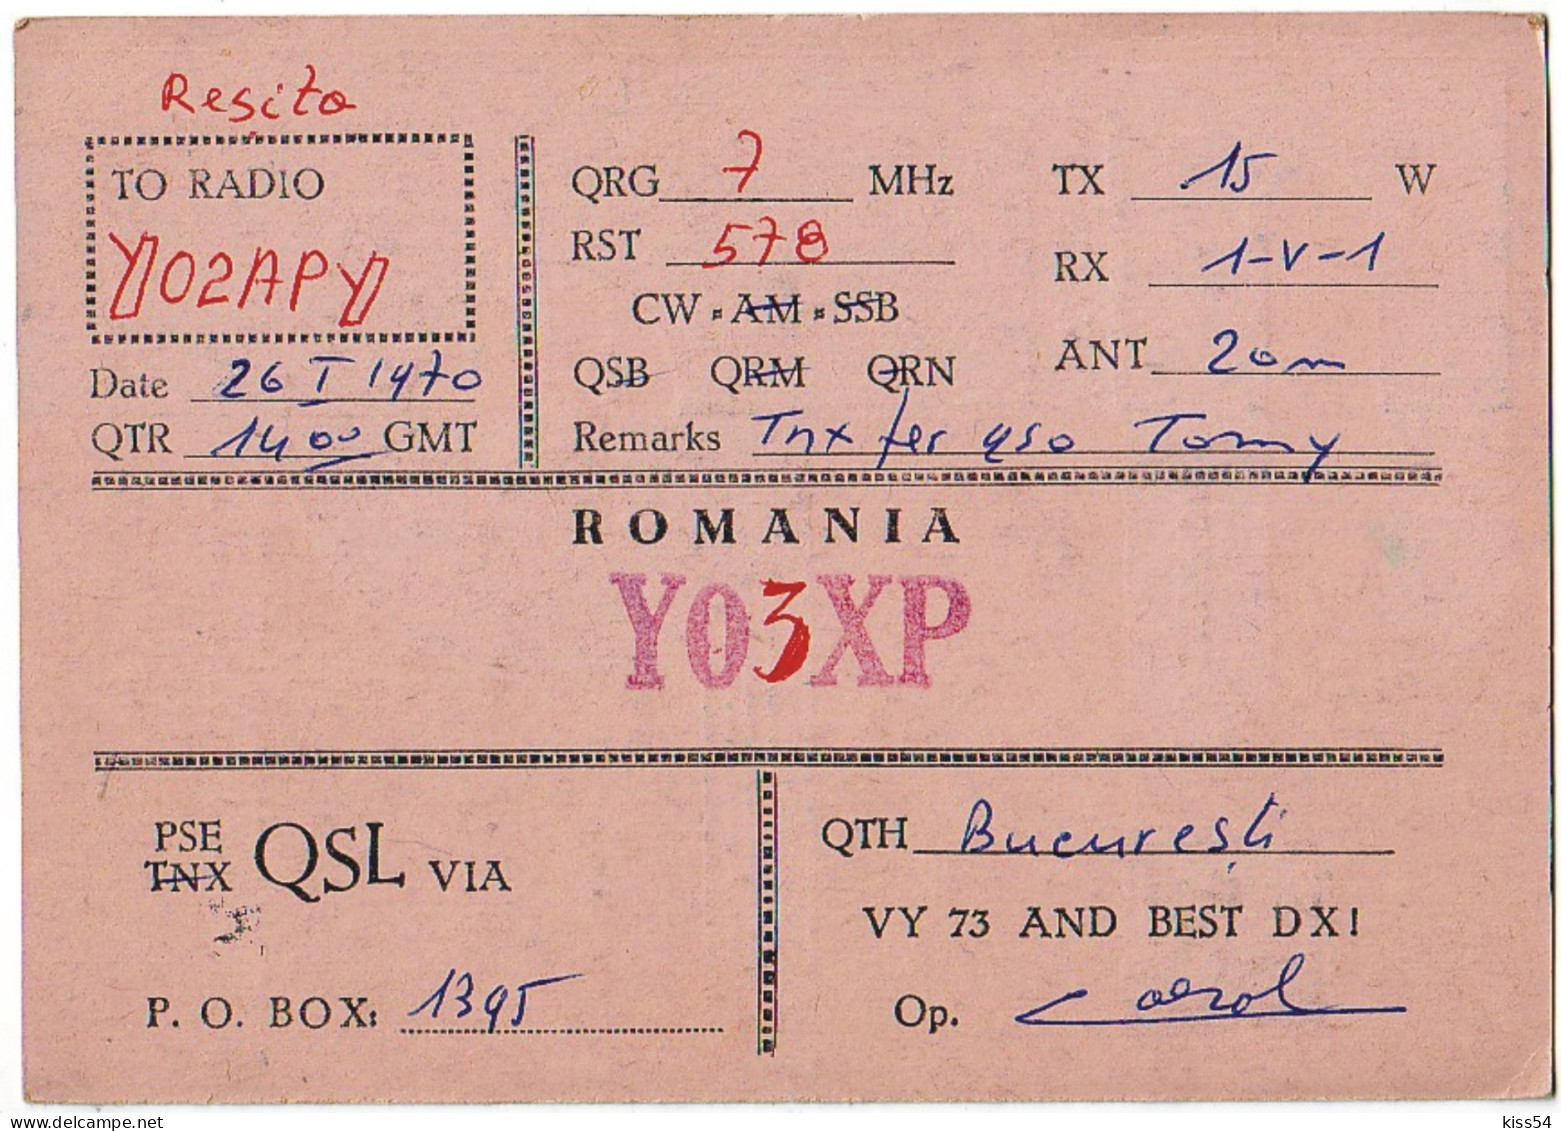 Q 40 - 301-a ROMANIA - 1970 - Amateurfunk